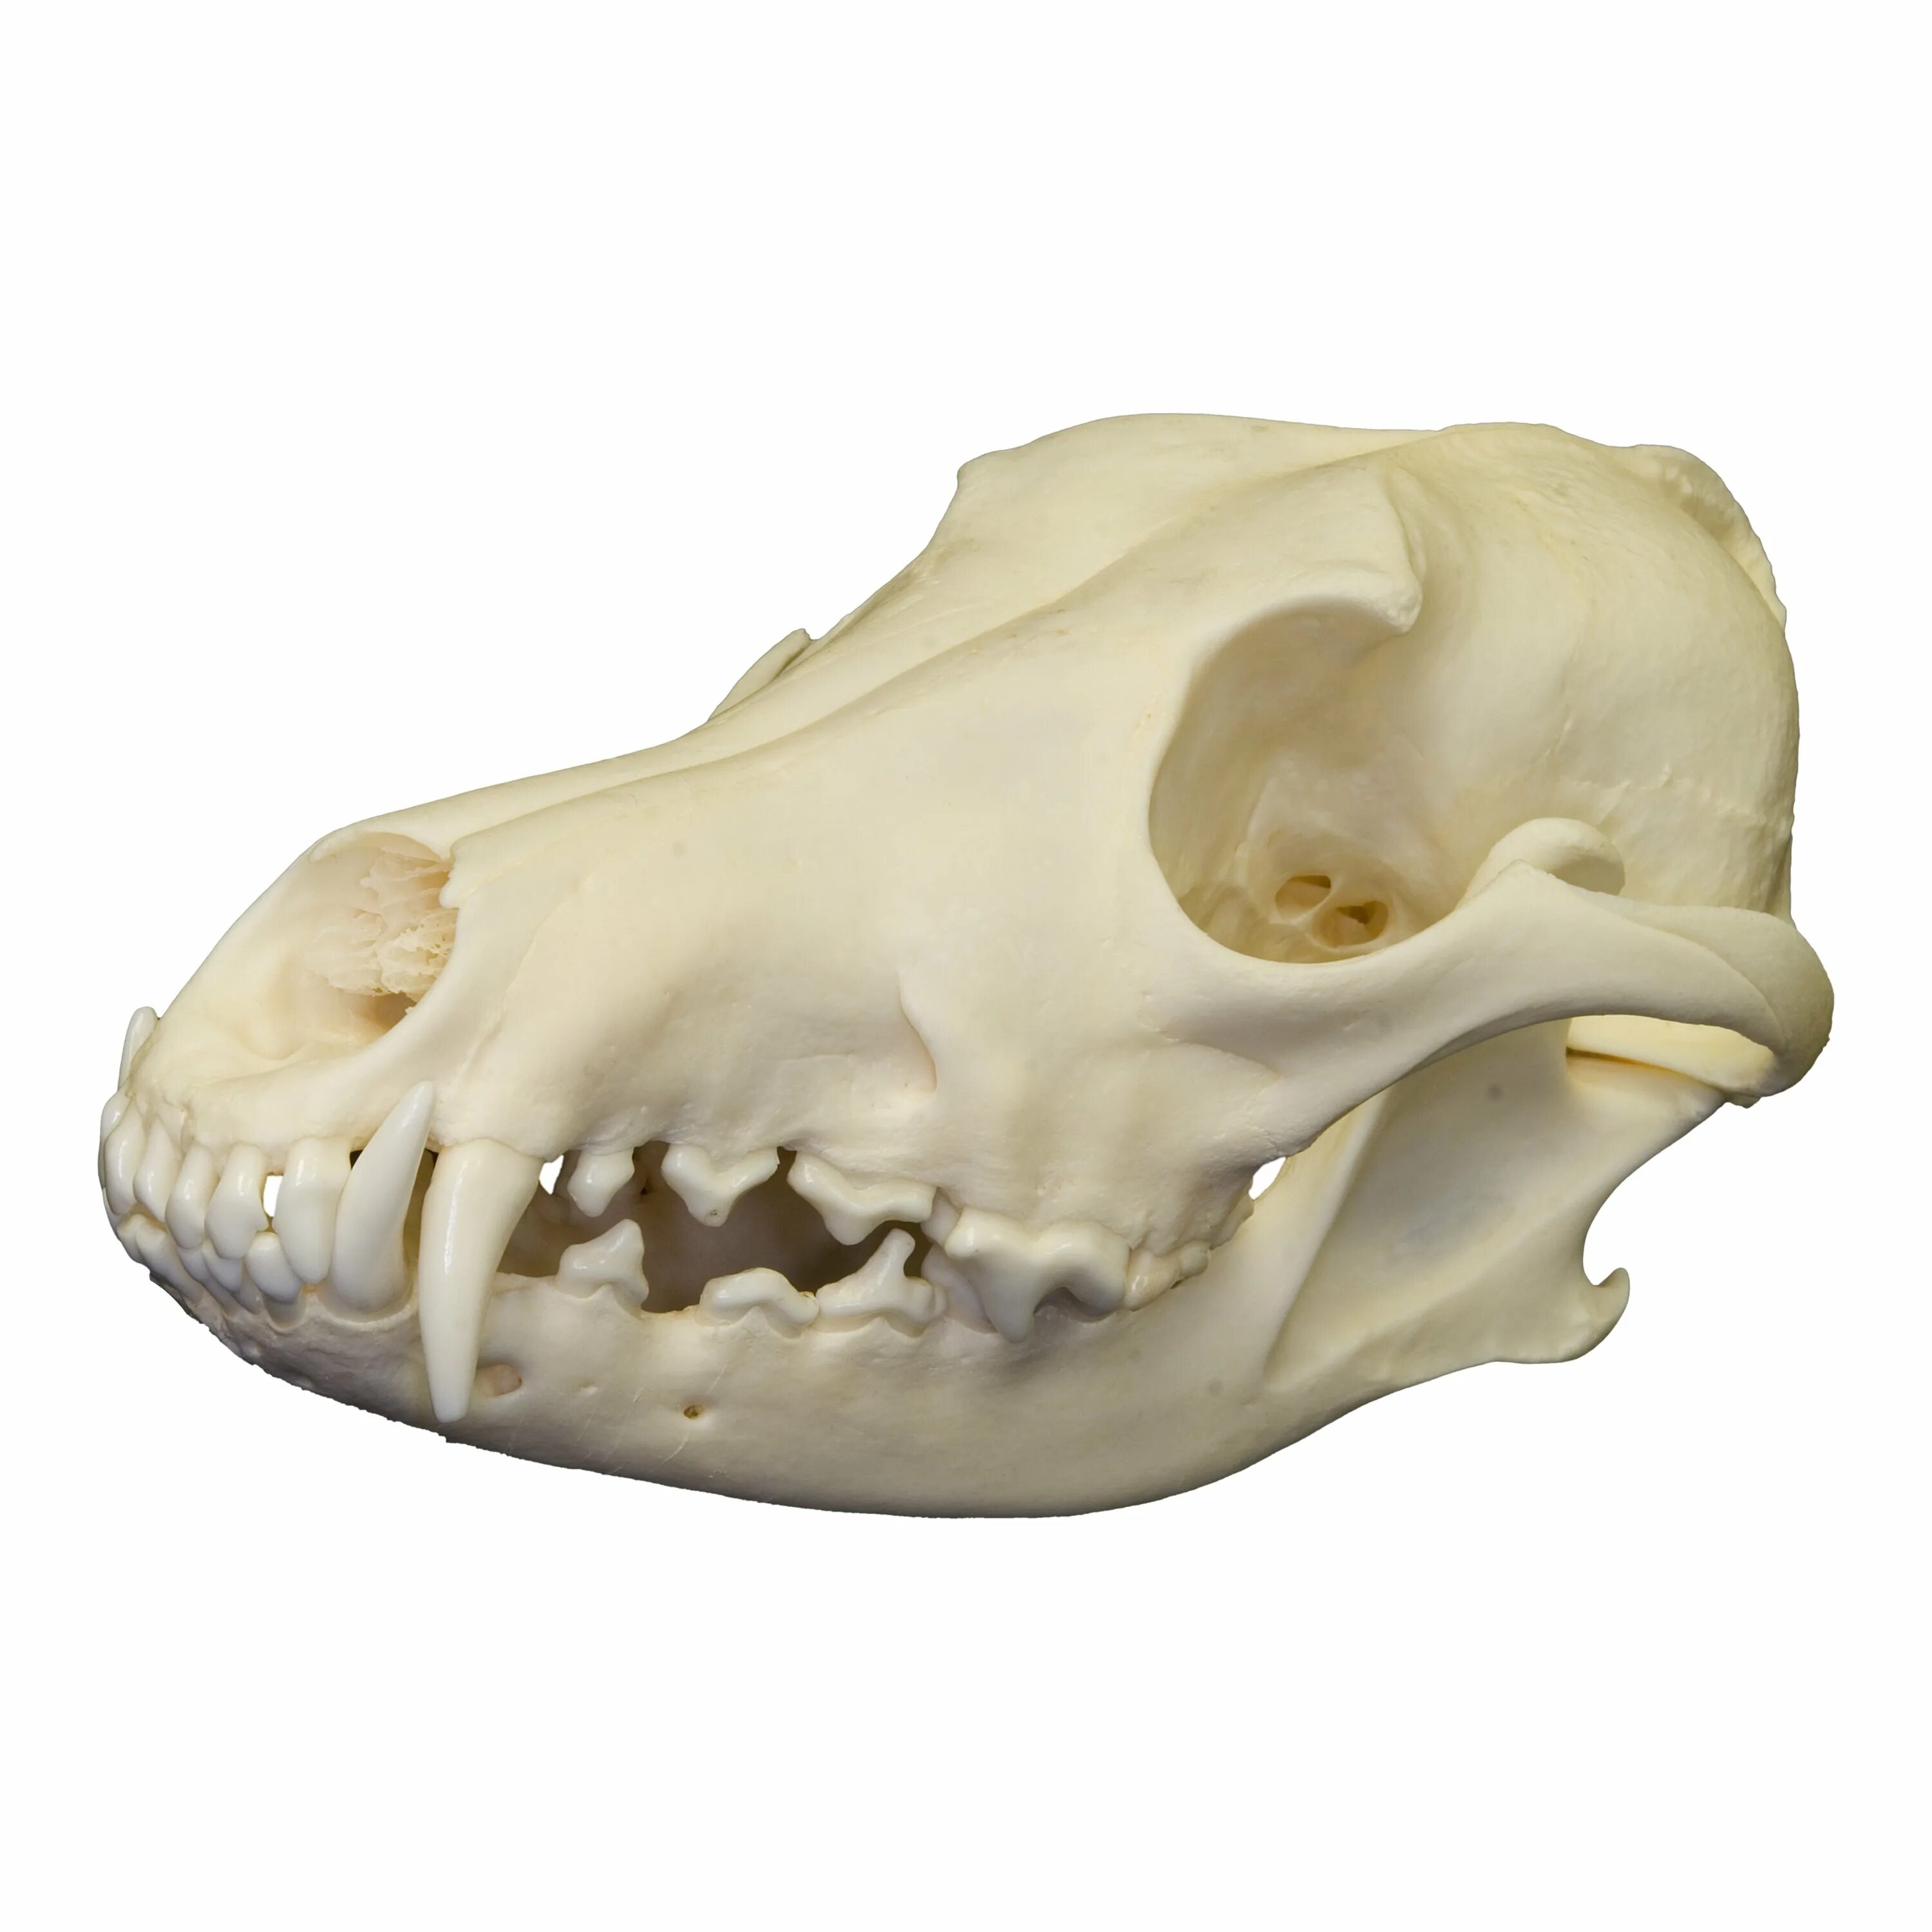 Сравните череп ящерицы и череп собаки